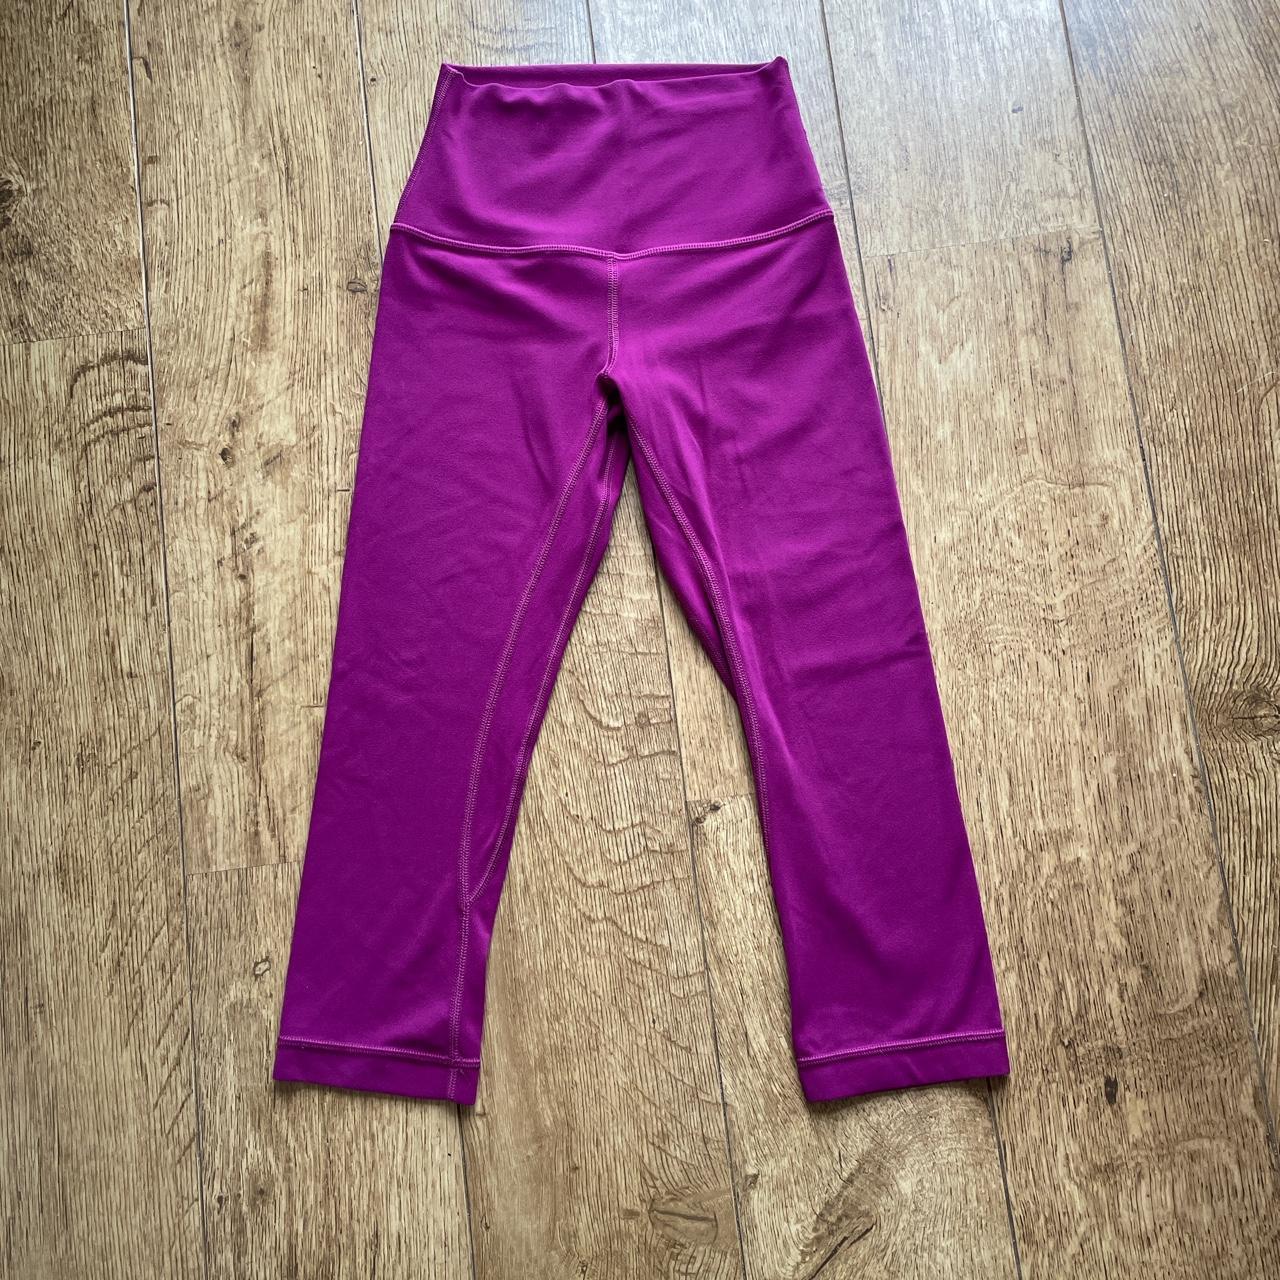 Lululemon Align crop 19”leggings in magenta size... - Depop